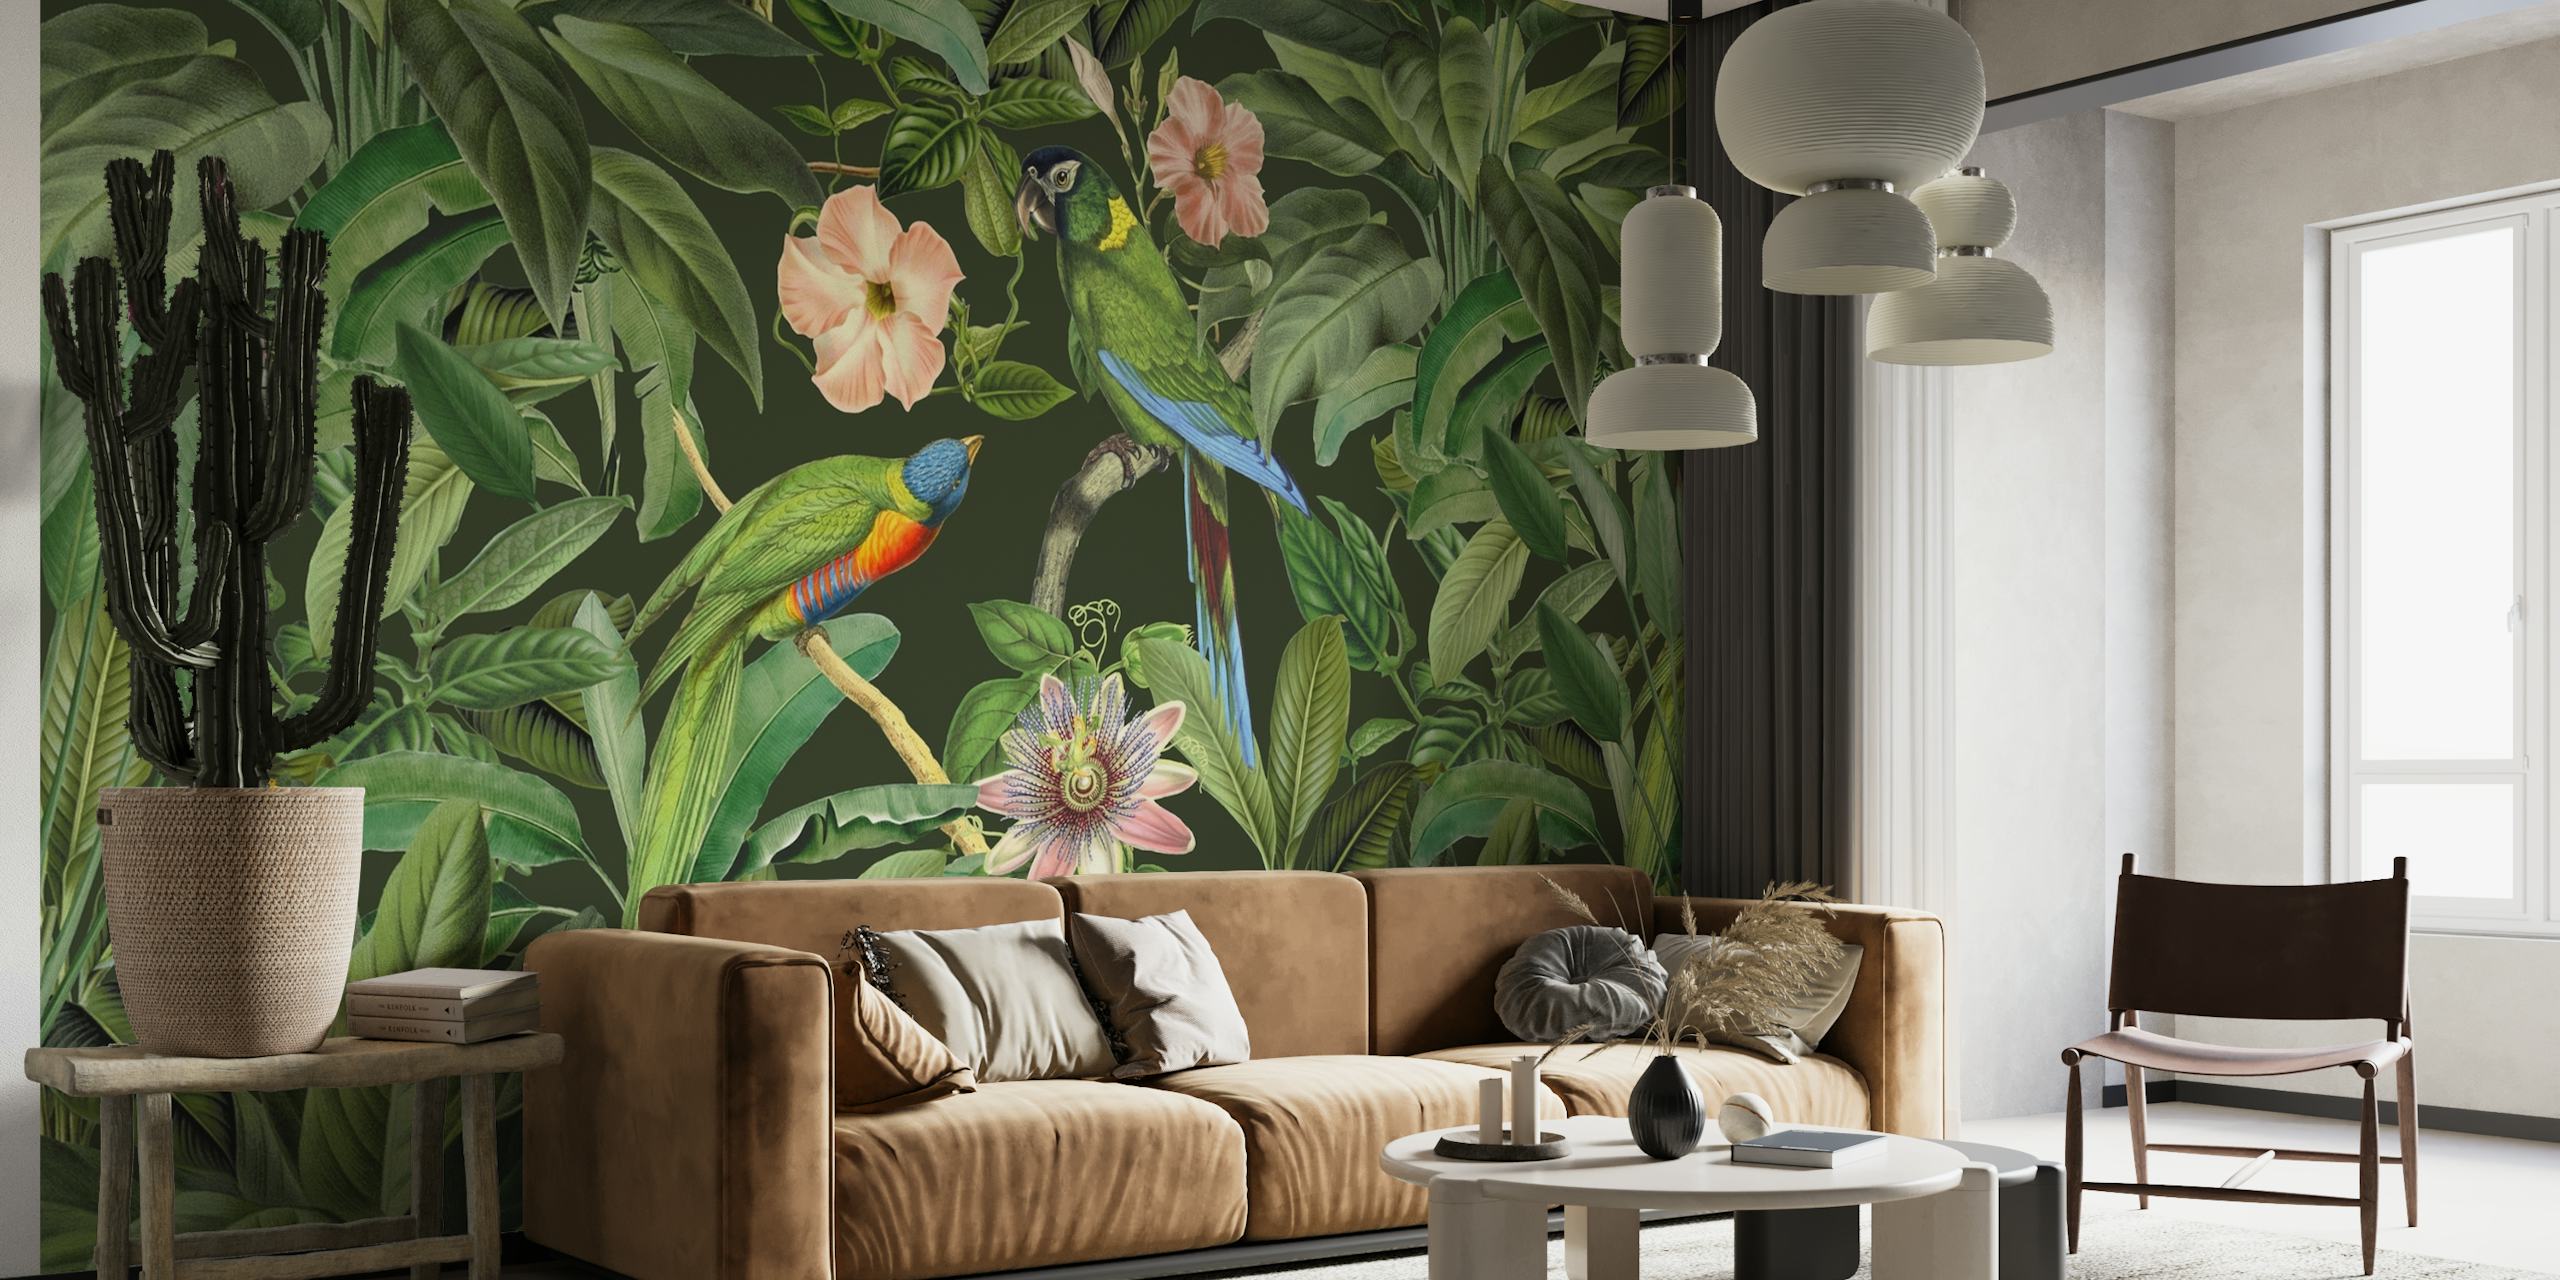 Mural sa živopisnim tropskim lišćem i egzotičnim pticama